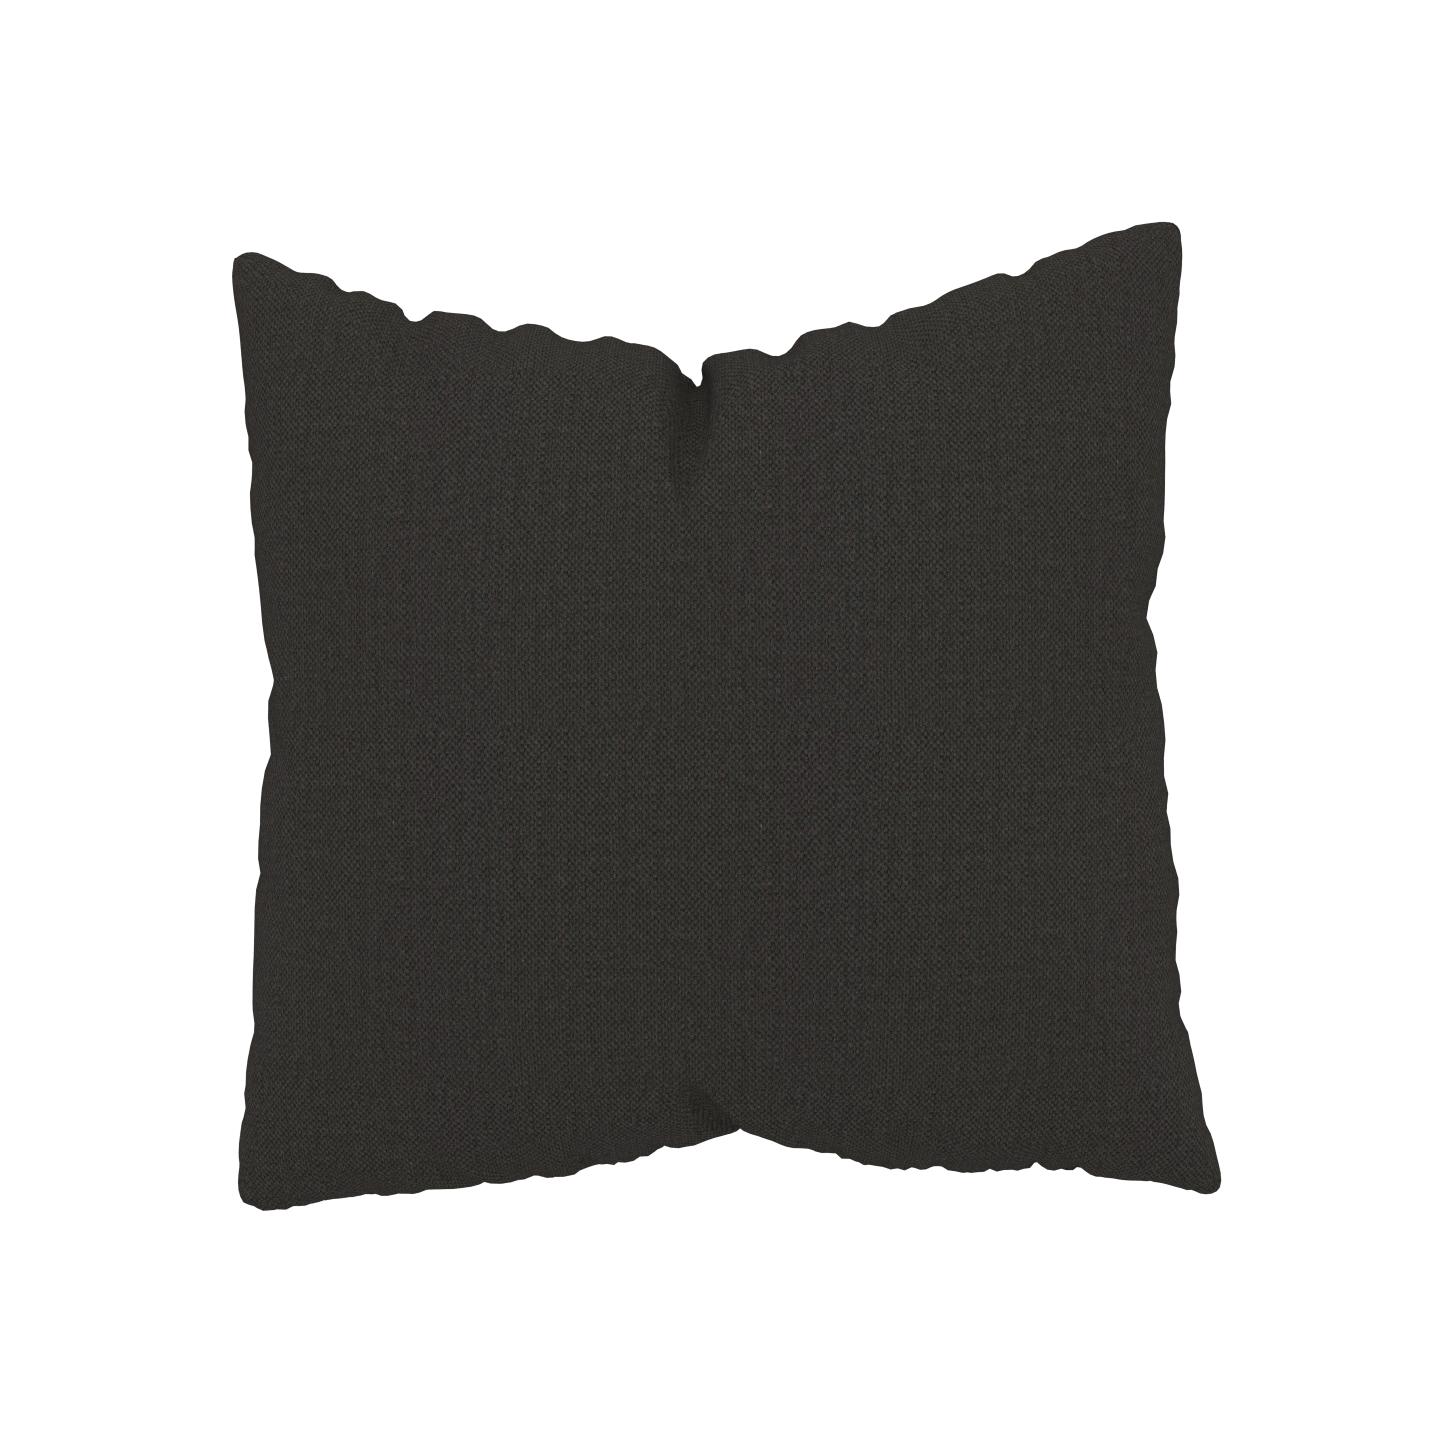 MYCS Coussin Anthracite - 50x50 cm - Housse en Textile tissé. Coussin de canapé moelleux